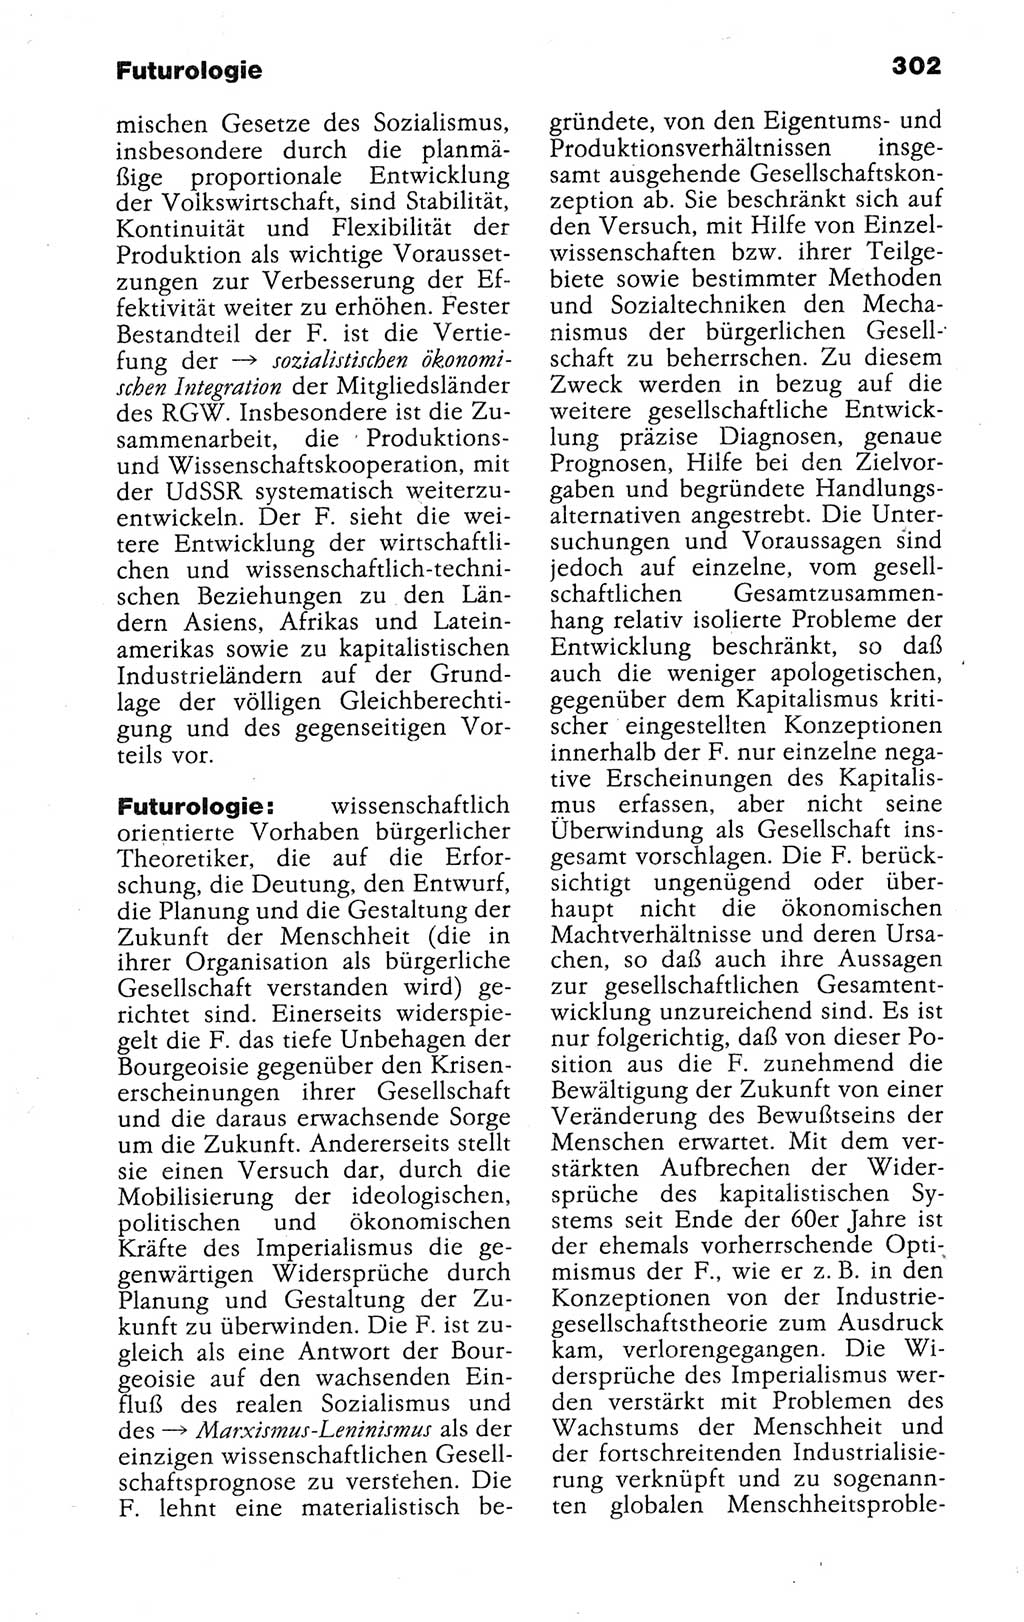 Kleines politisches Wörterbuch [Deutsche Demokratische Republik (DDR)] 1988, Seite 302 (Kl. pol. Wb. DDR 1988, S. 302)